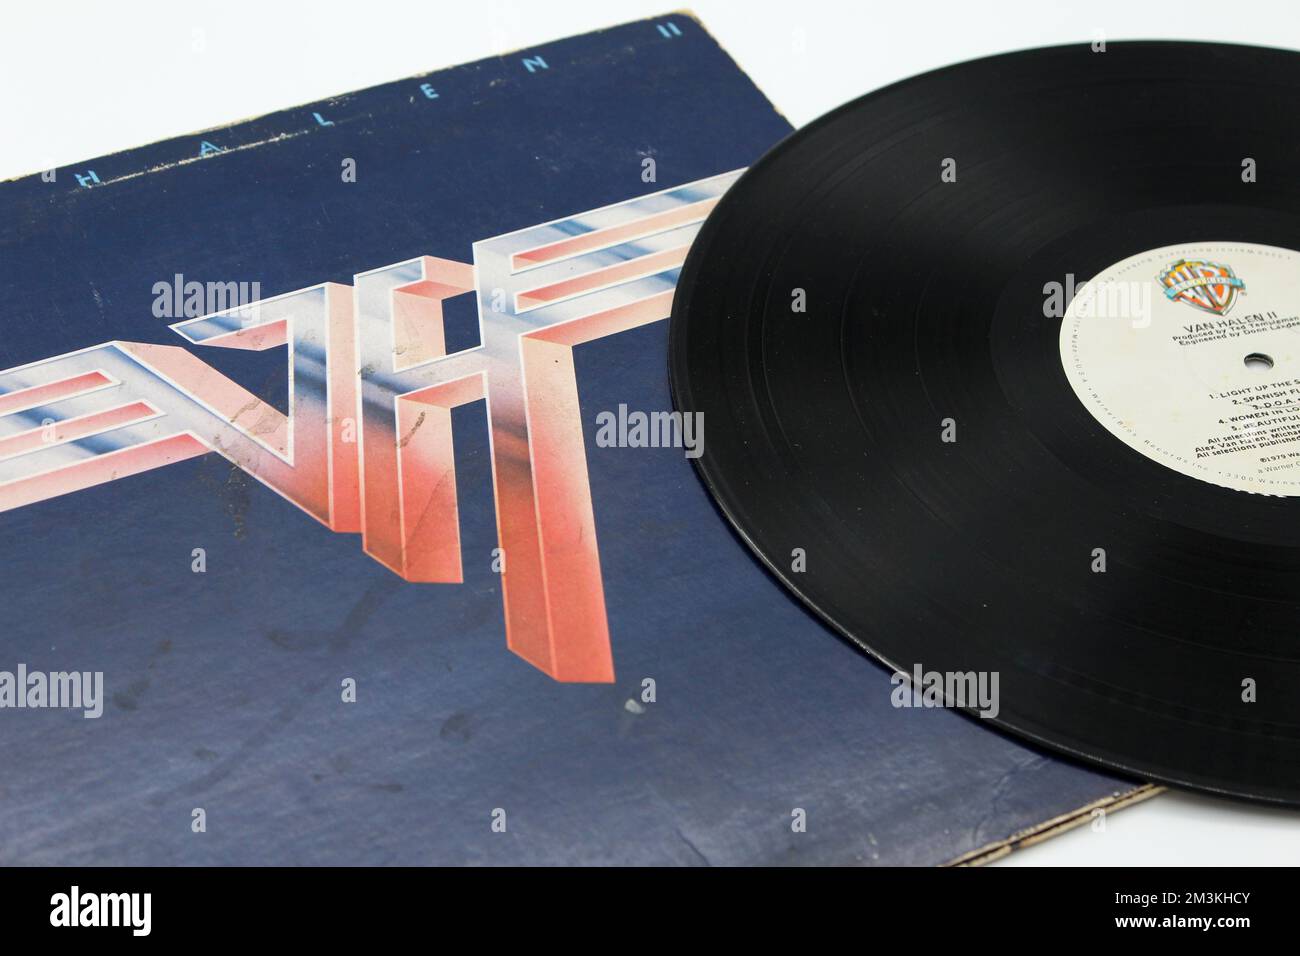 Hard rock, heavy metal and glam metal band, Van Halen music album on vinyl record LP disc. Titled: Van Halen II album cover Stock Photo